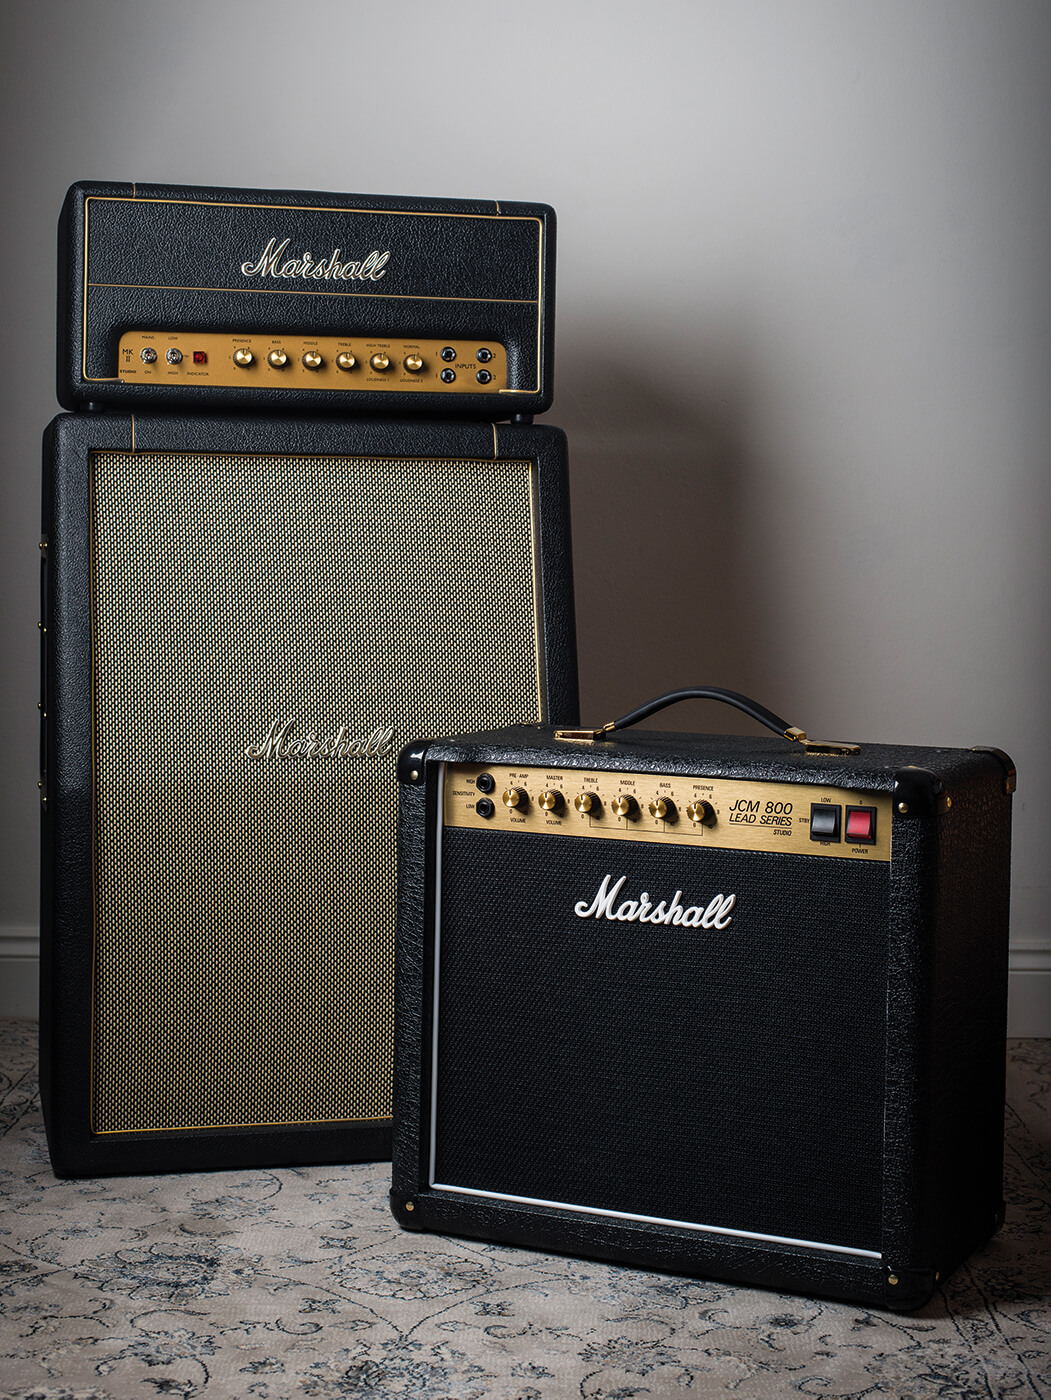 Marshall amps